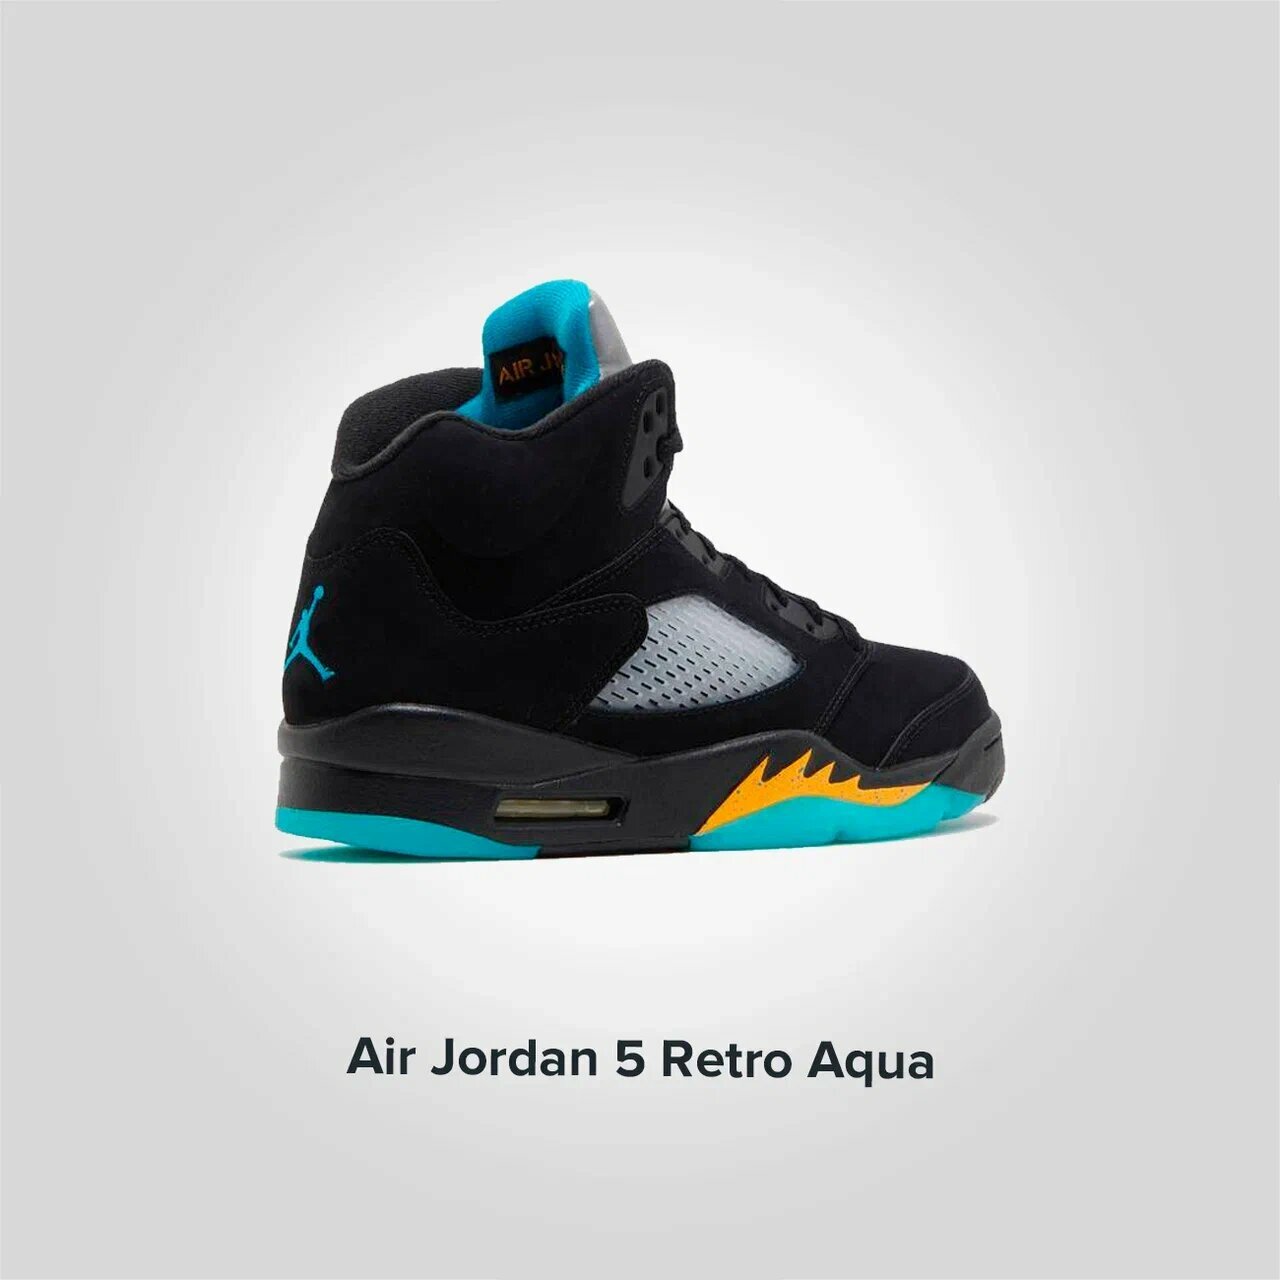 Jordan 5 Retro Aqua